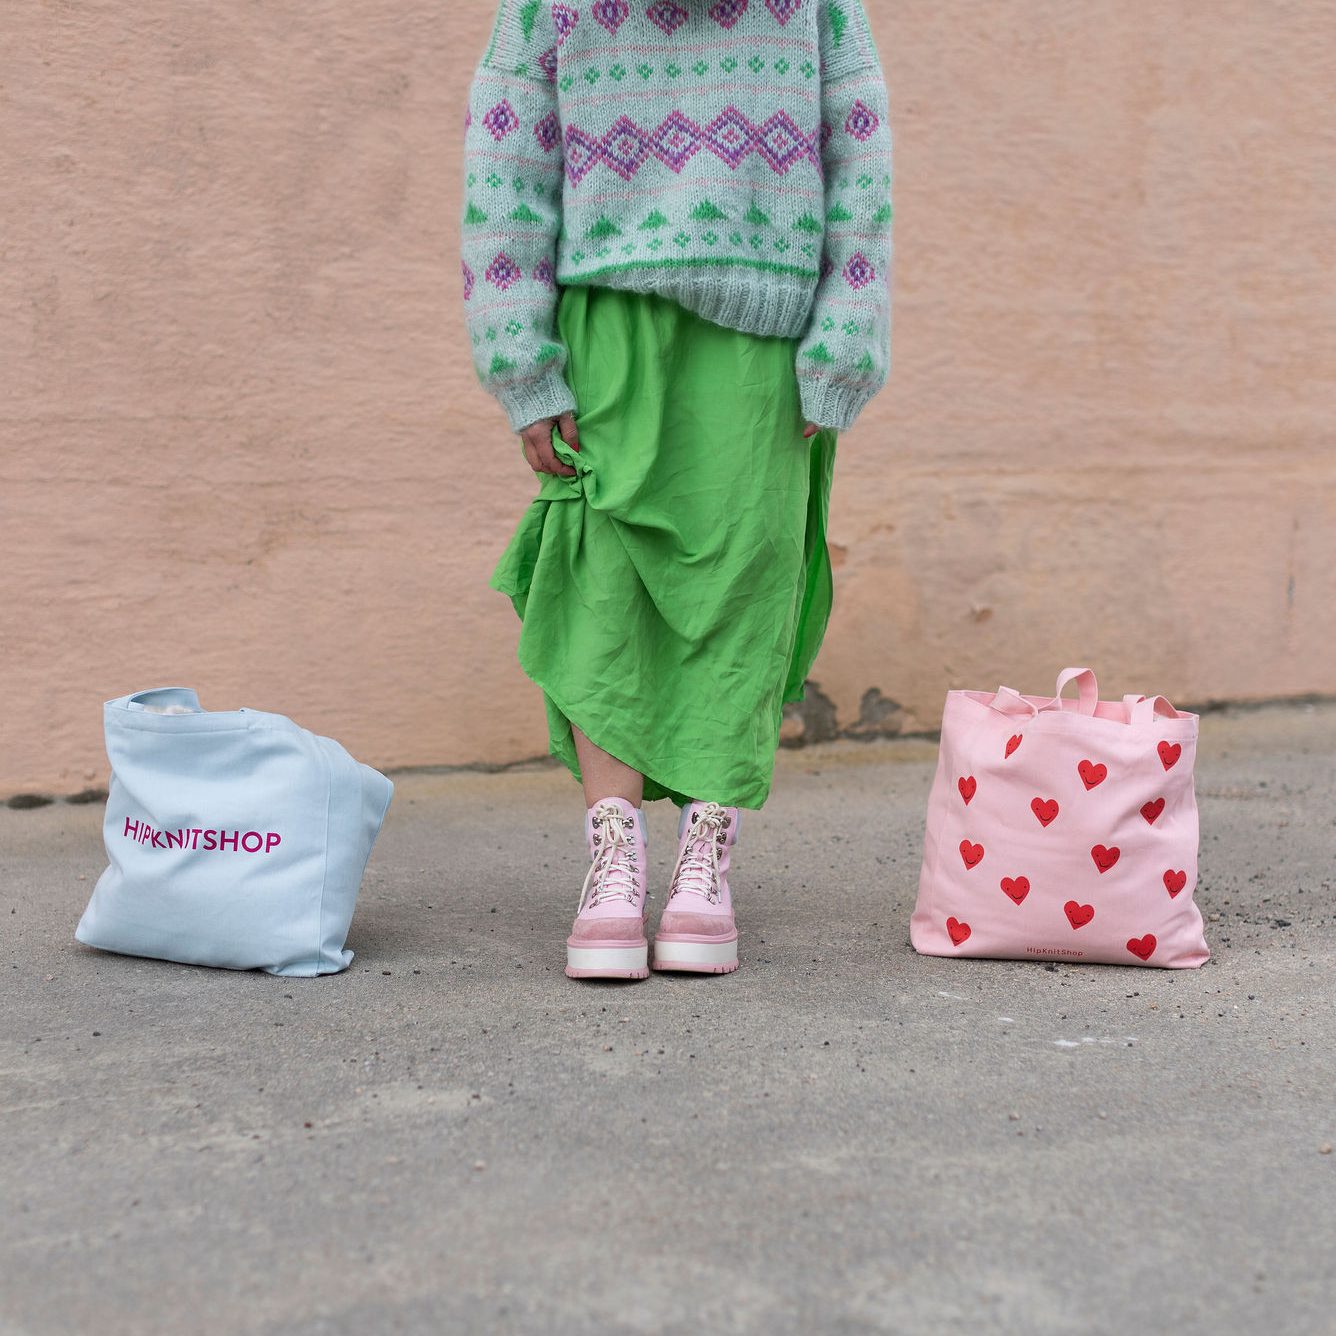  - I knit bag | Big storage bag | Project bag - by HipKnitShop - 25/05/2022